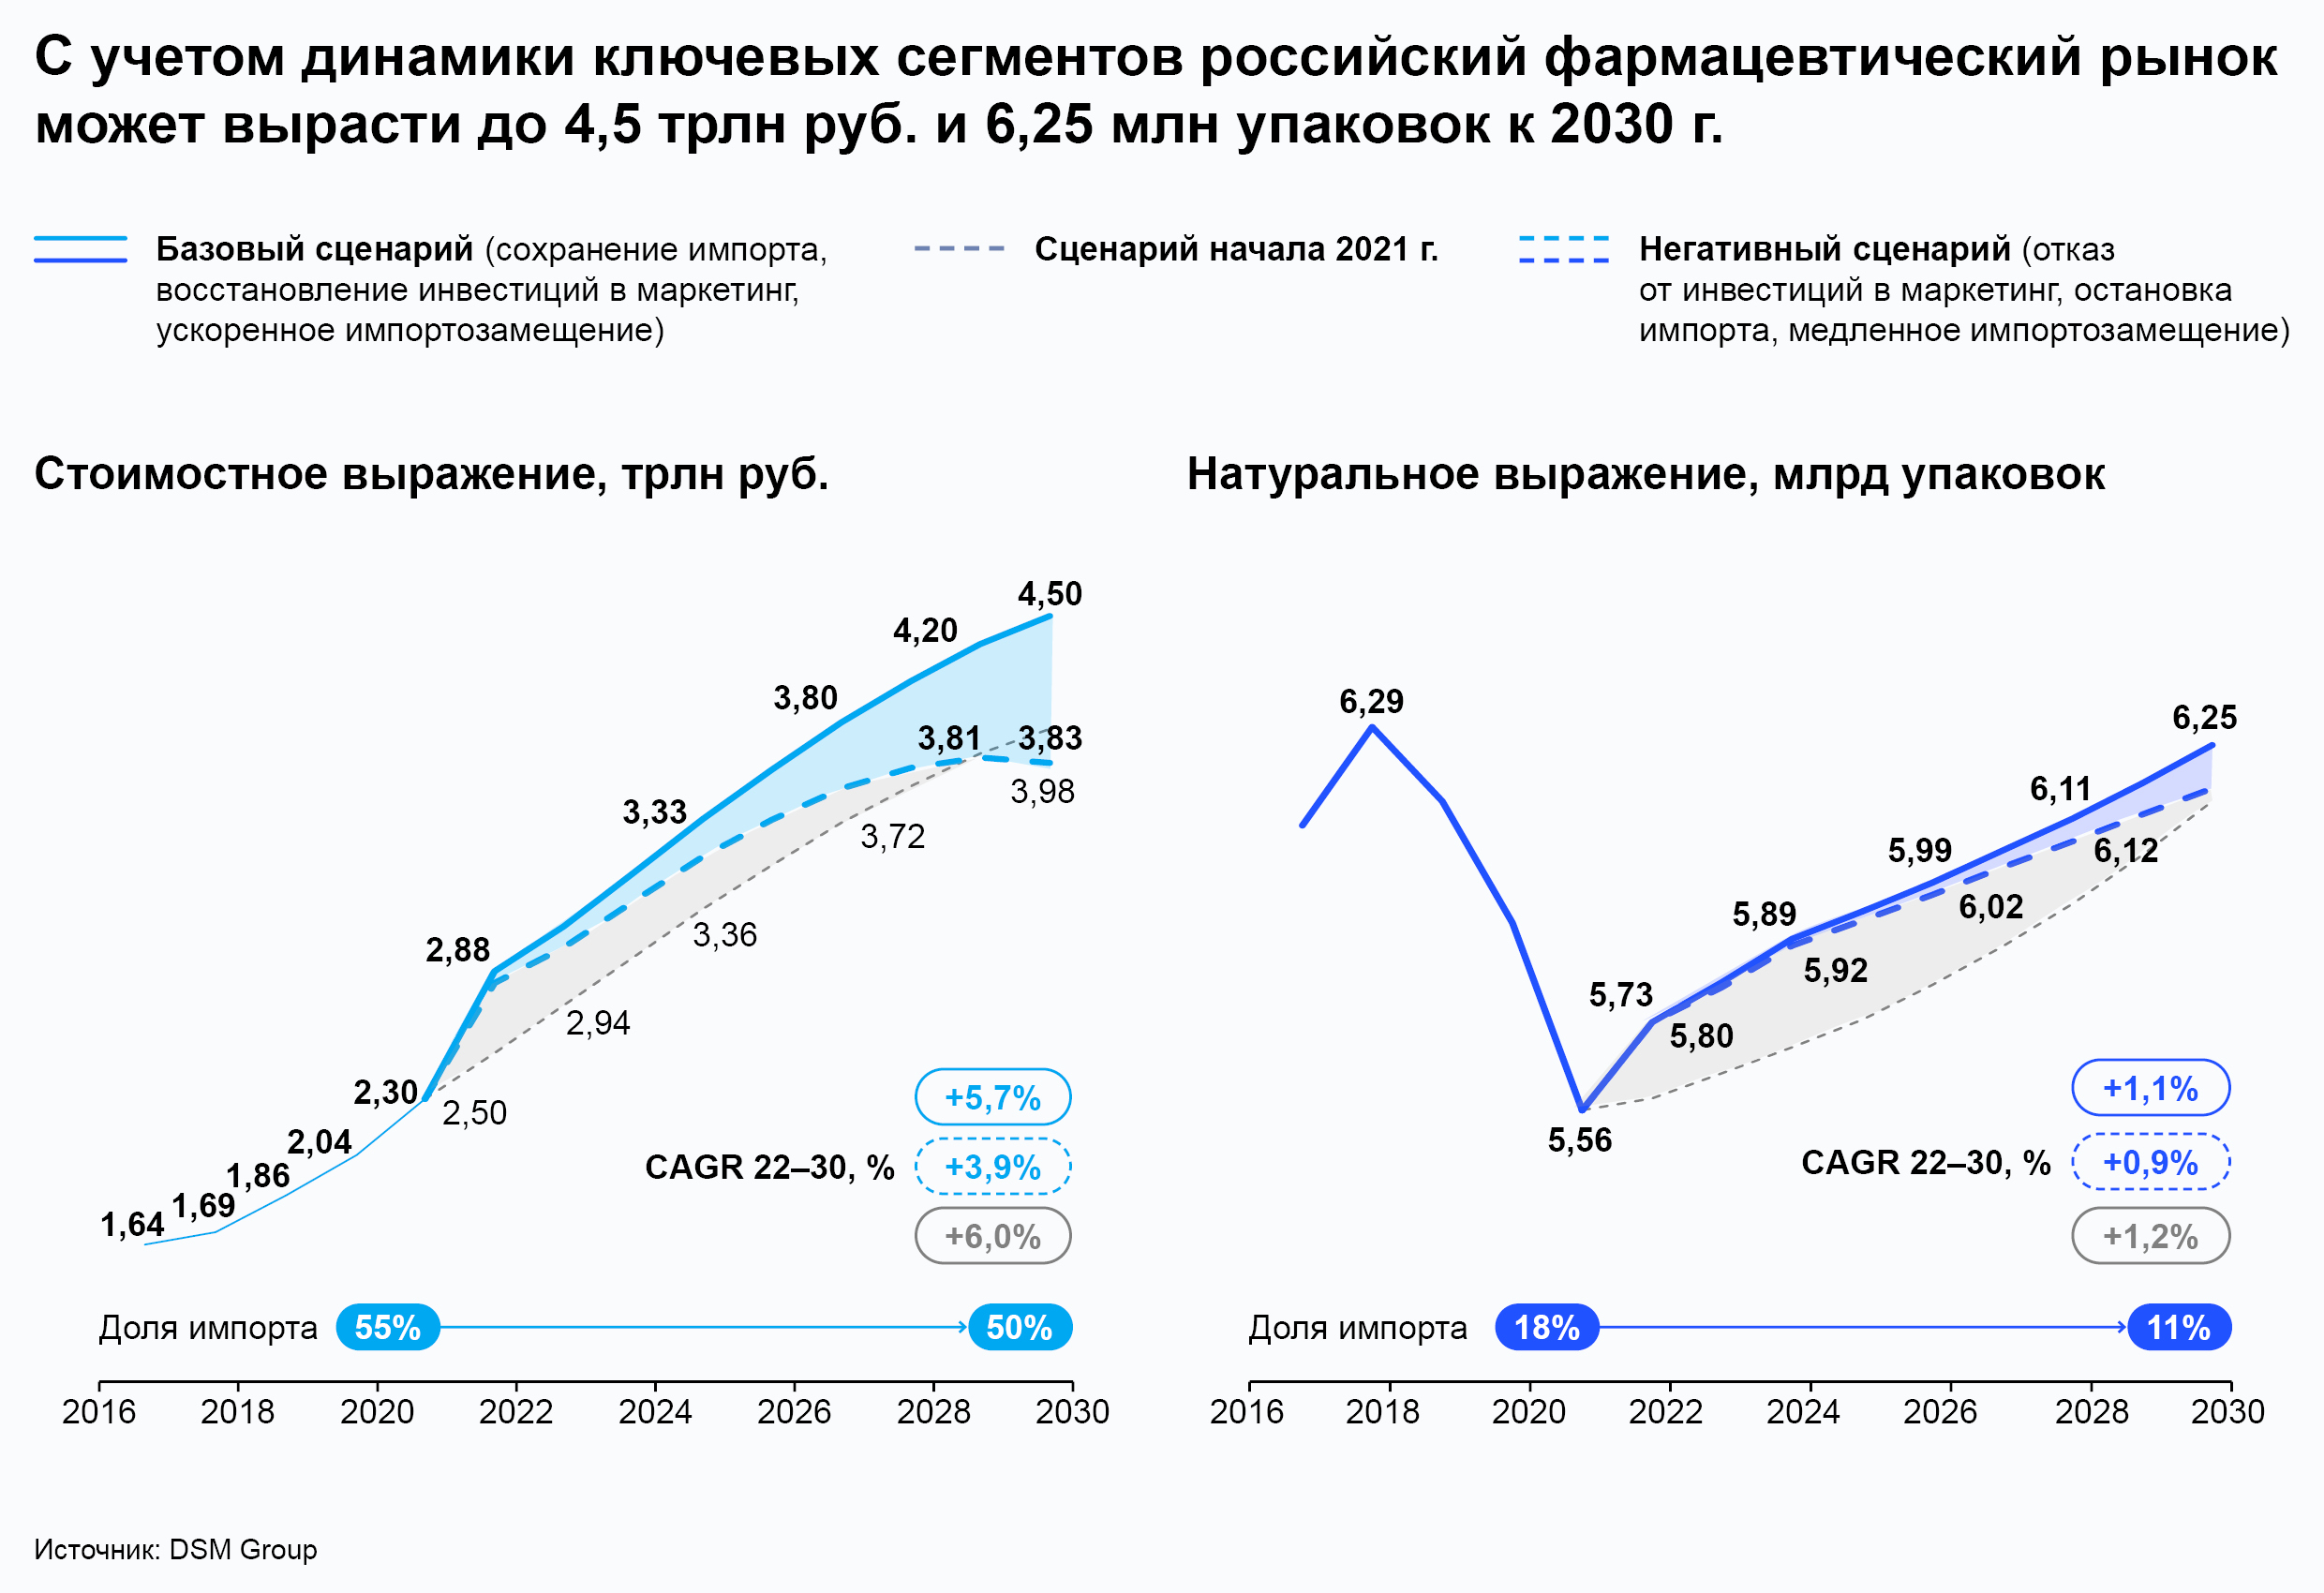 С учётом динамики ключевых сегментов российский фармацевтический рынок может вырасти до 4,5 трлн руб. и 6,25 млн упаковок к 2030 г.